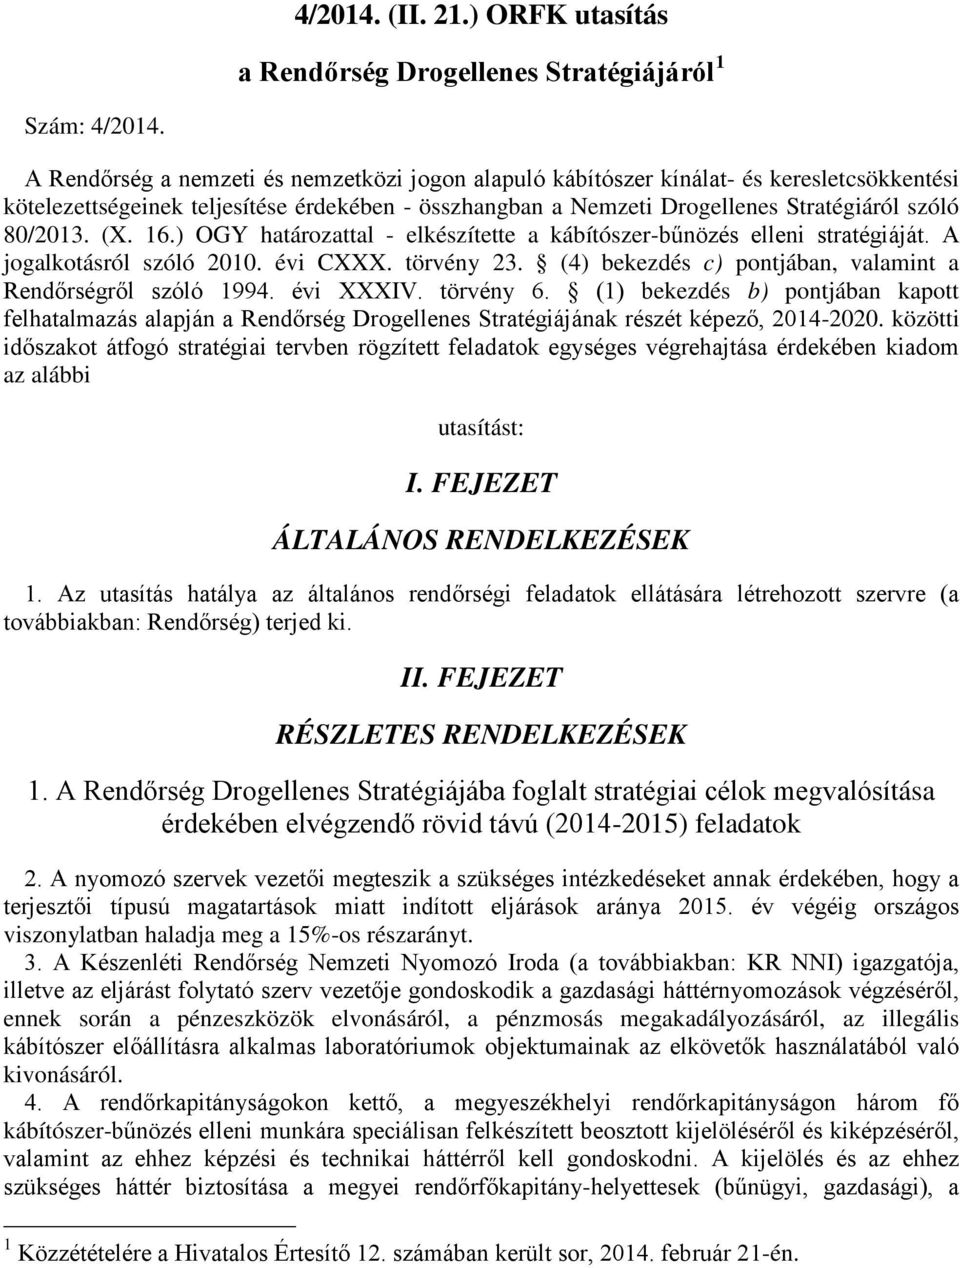 4/2014. (II. 21.) ORFK utasítás. a Rendőrség Drogellenes Stratégiájáról 1  I. FEJEZET ÁLTALÁNOS RENDELKEZÉSEK II. FEJEZET RÉSZLETES RENDELKEZÉSEK -  PDF Free Download